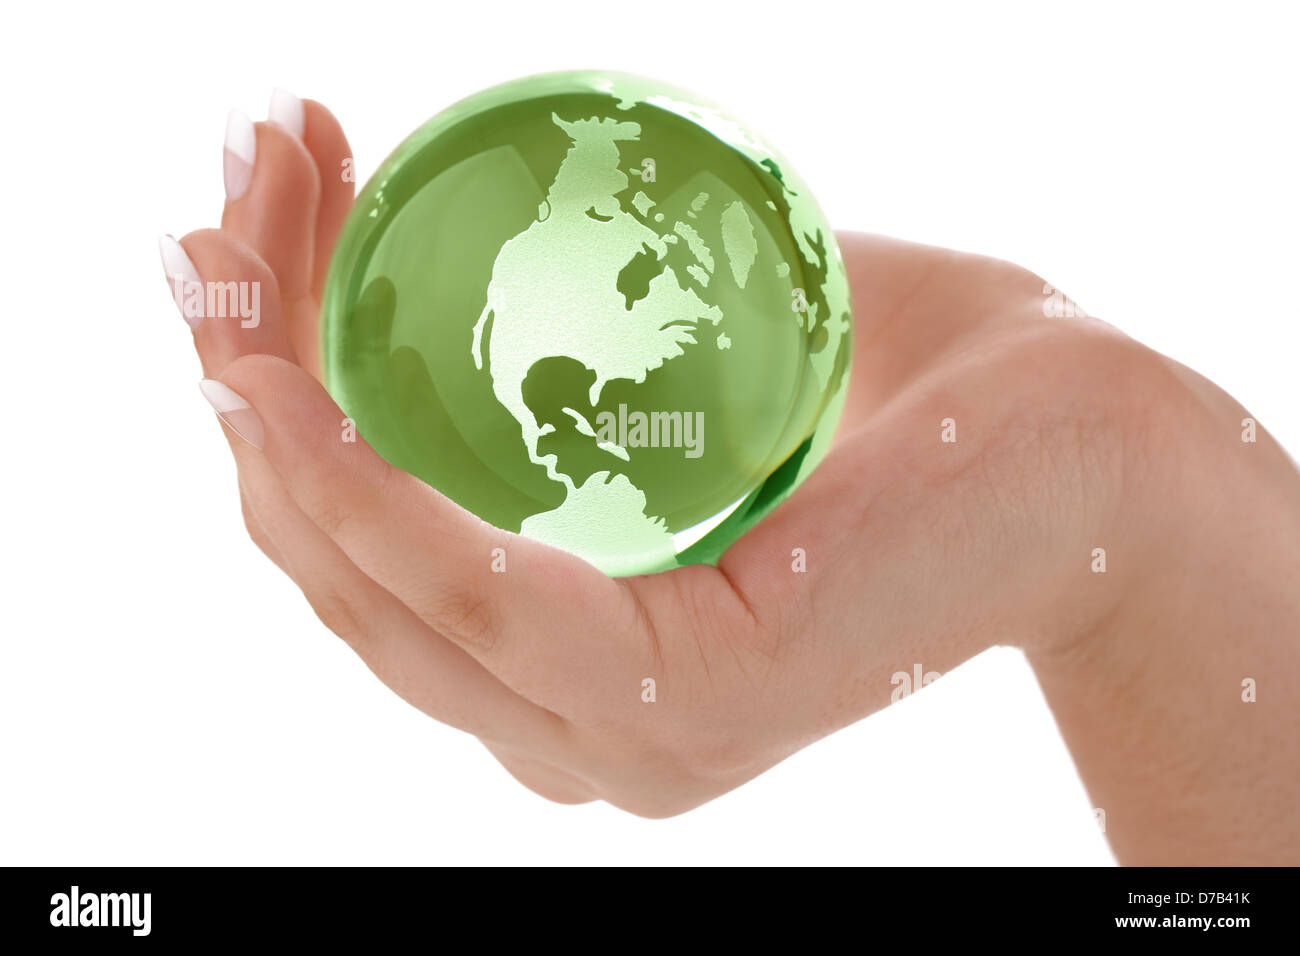 Green globe in female hand Stock Photo